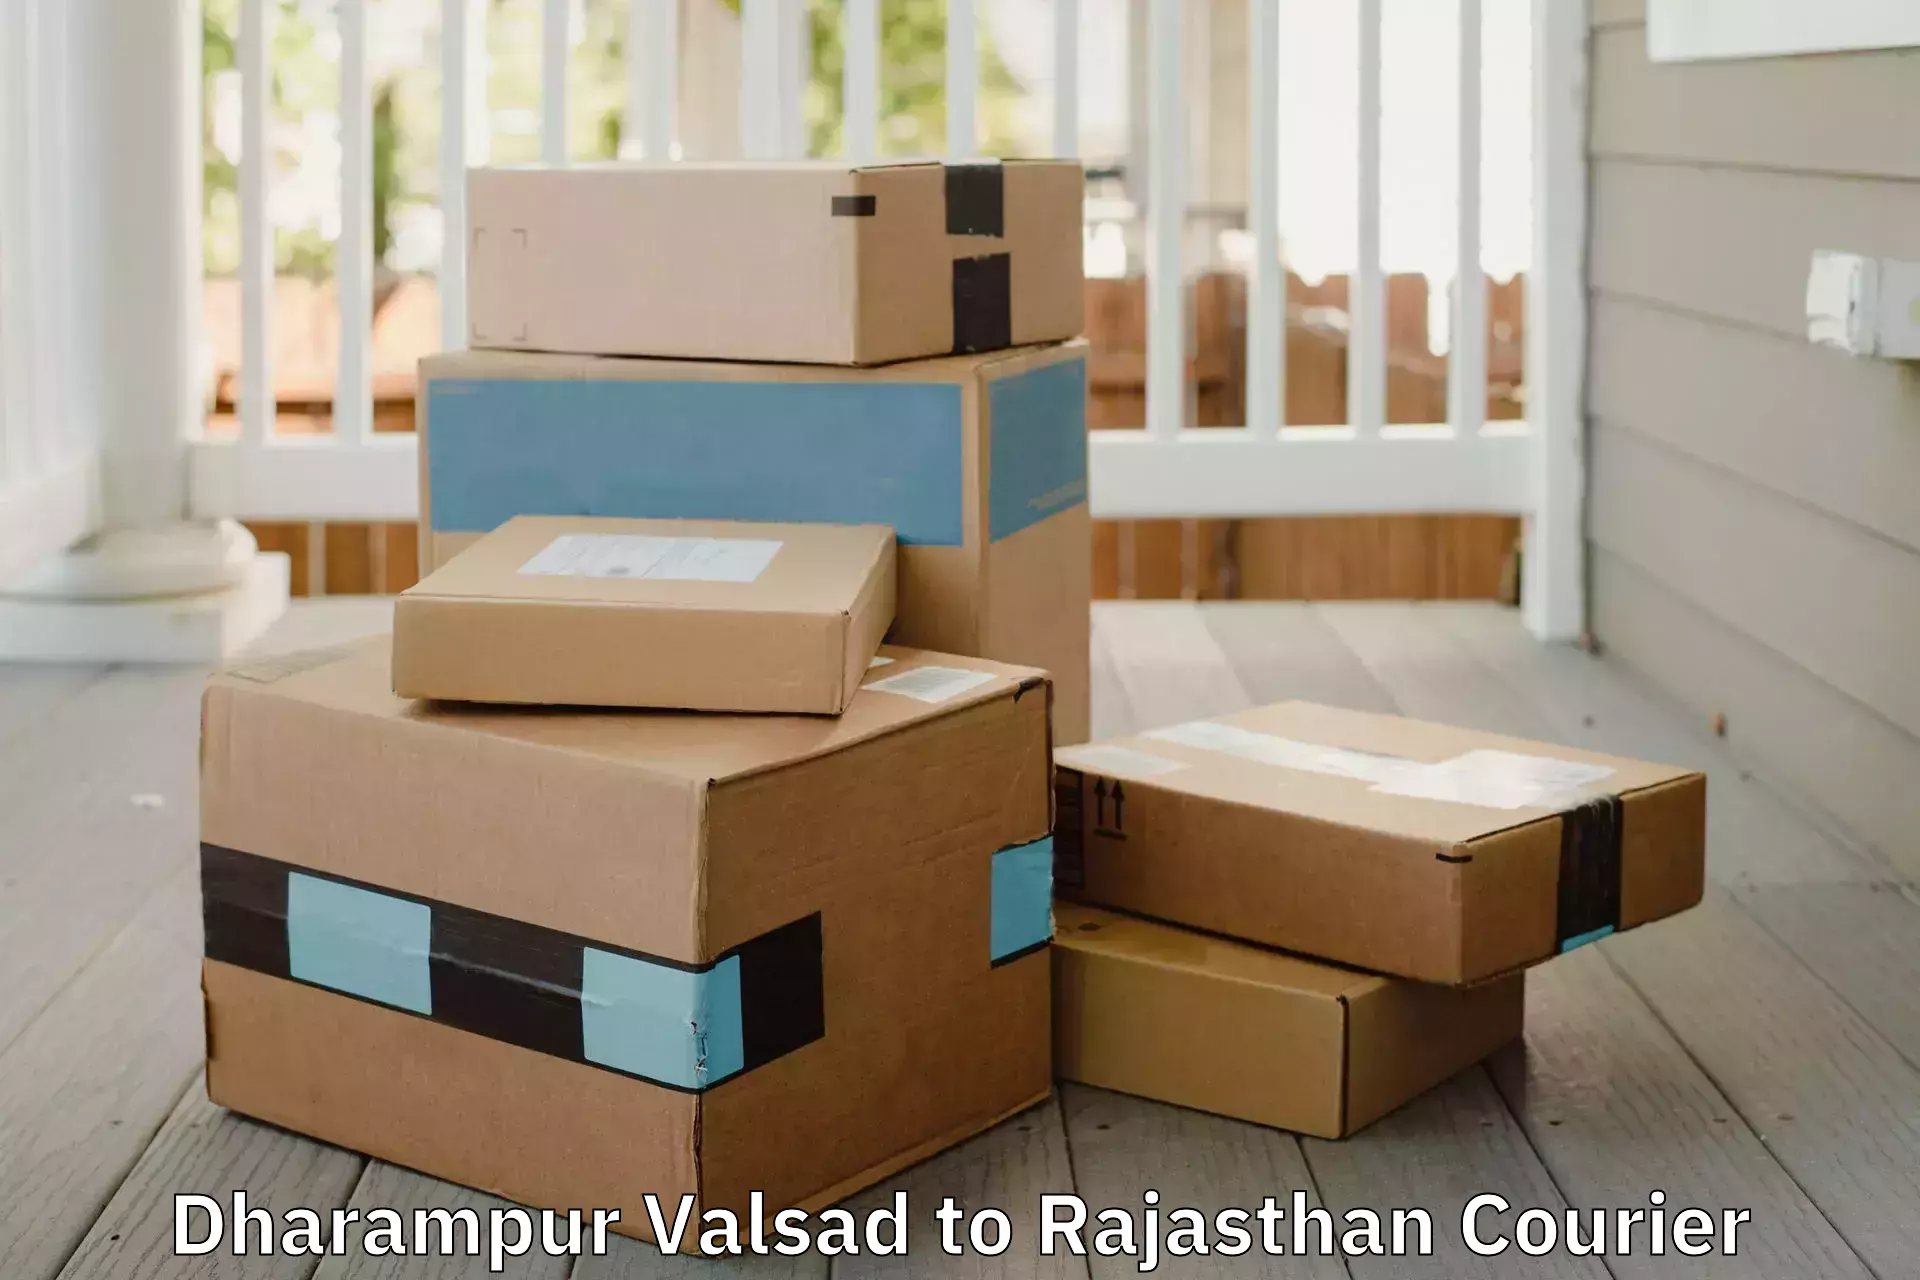 Furniture moving plans Dharampur Valsad to Nainwa